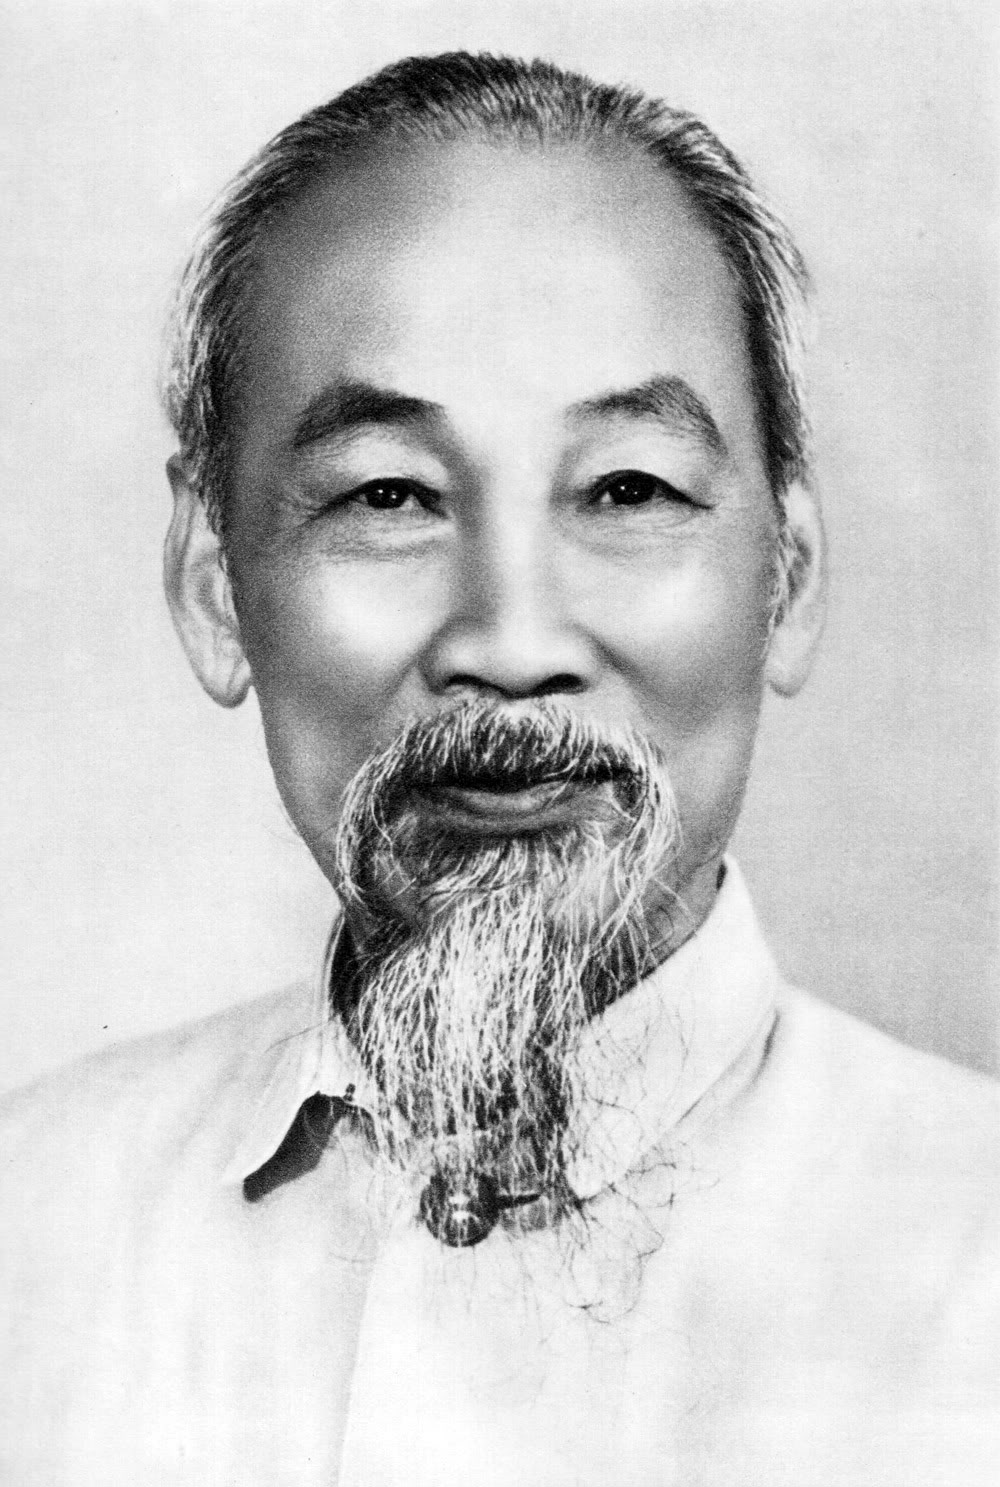 Ngắm nhìn lại những hình ảnh lịch sử xúc động về Chủ tịch Hồ Chí Minh - Ảnh 31